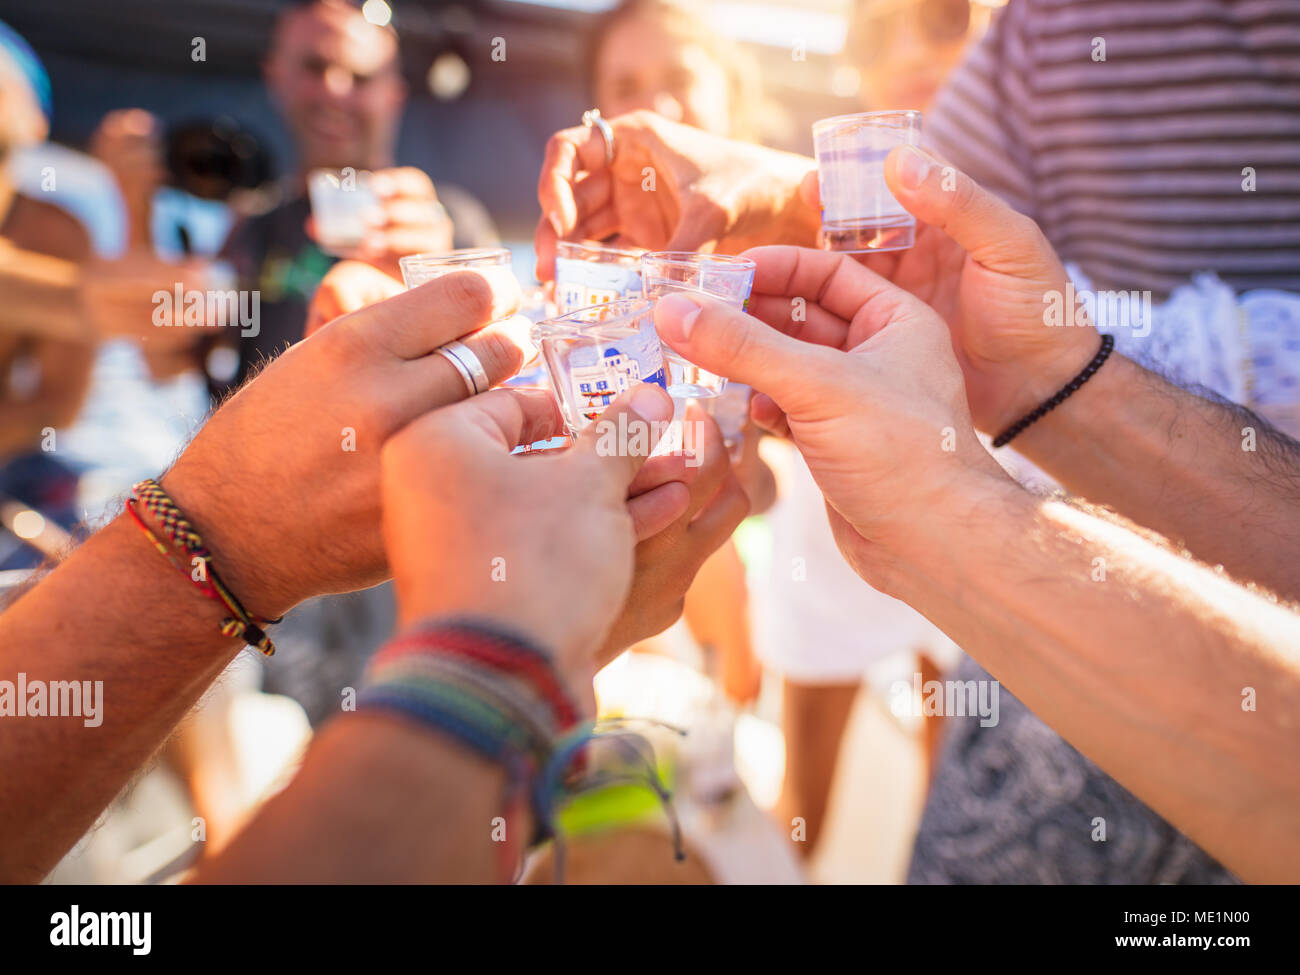 Photo Gros plan d'un des hommes les mains avec verre de boisson alcoolisée, parlant de toasts, Cheers, célèbre maison de vacances plein air, vacances d'été, heureux parti Banque D'Images